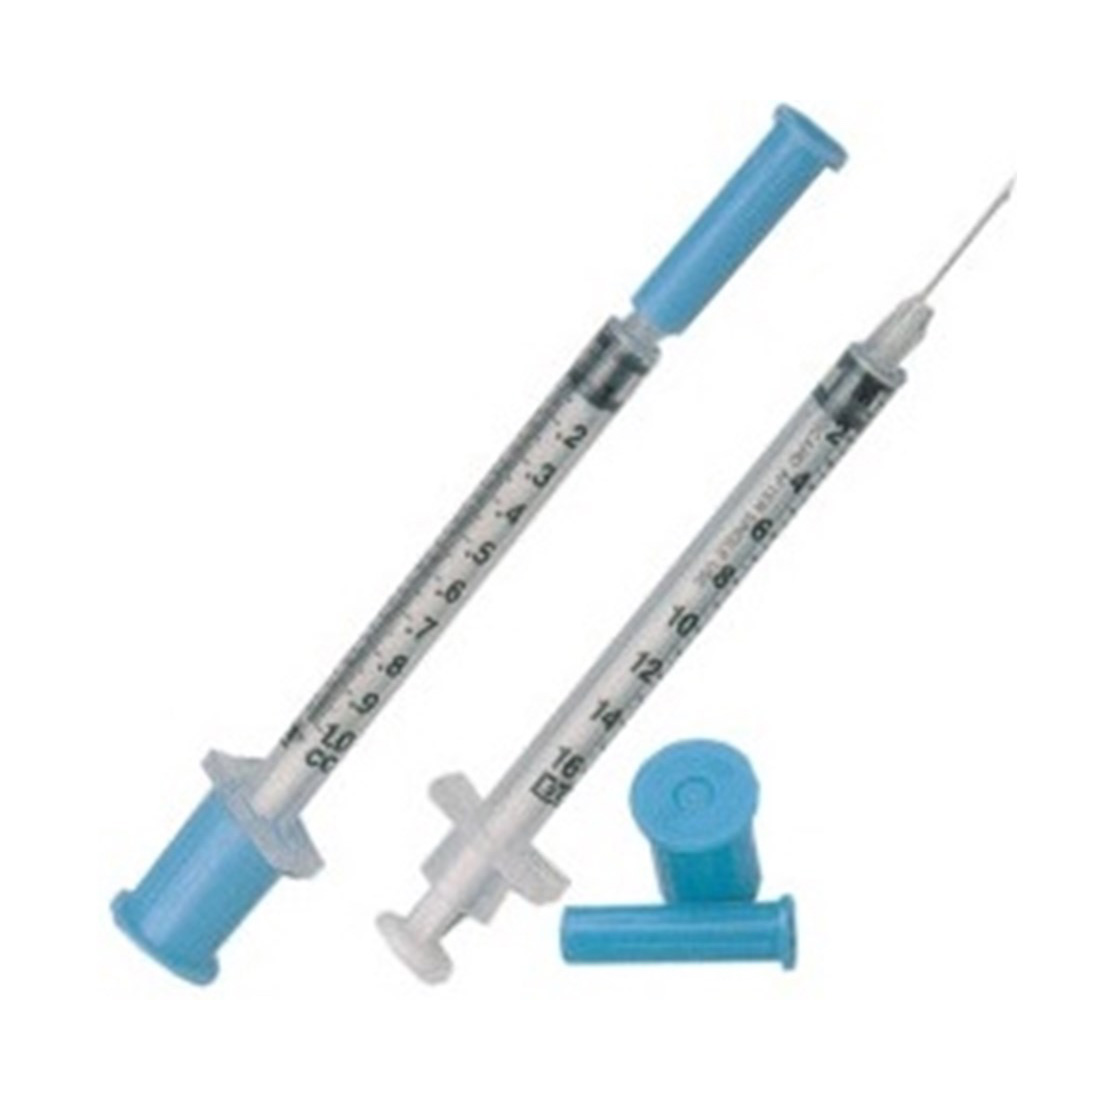 1cc Zero Dead Space TB Syringe with 25g x 5/8” Needle - 100/Box